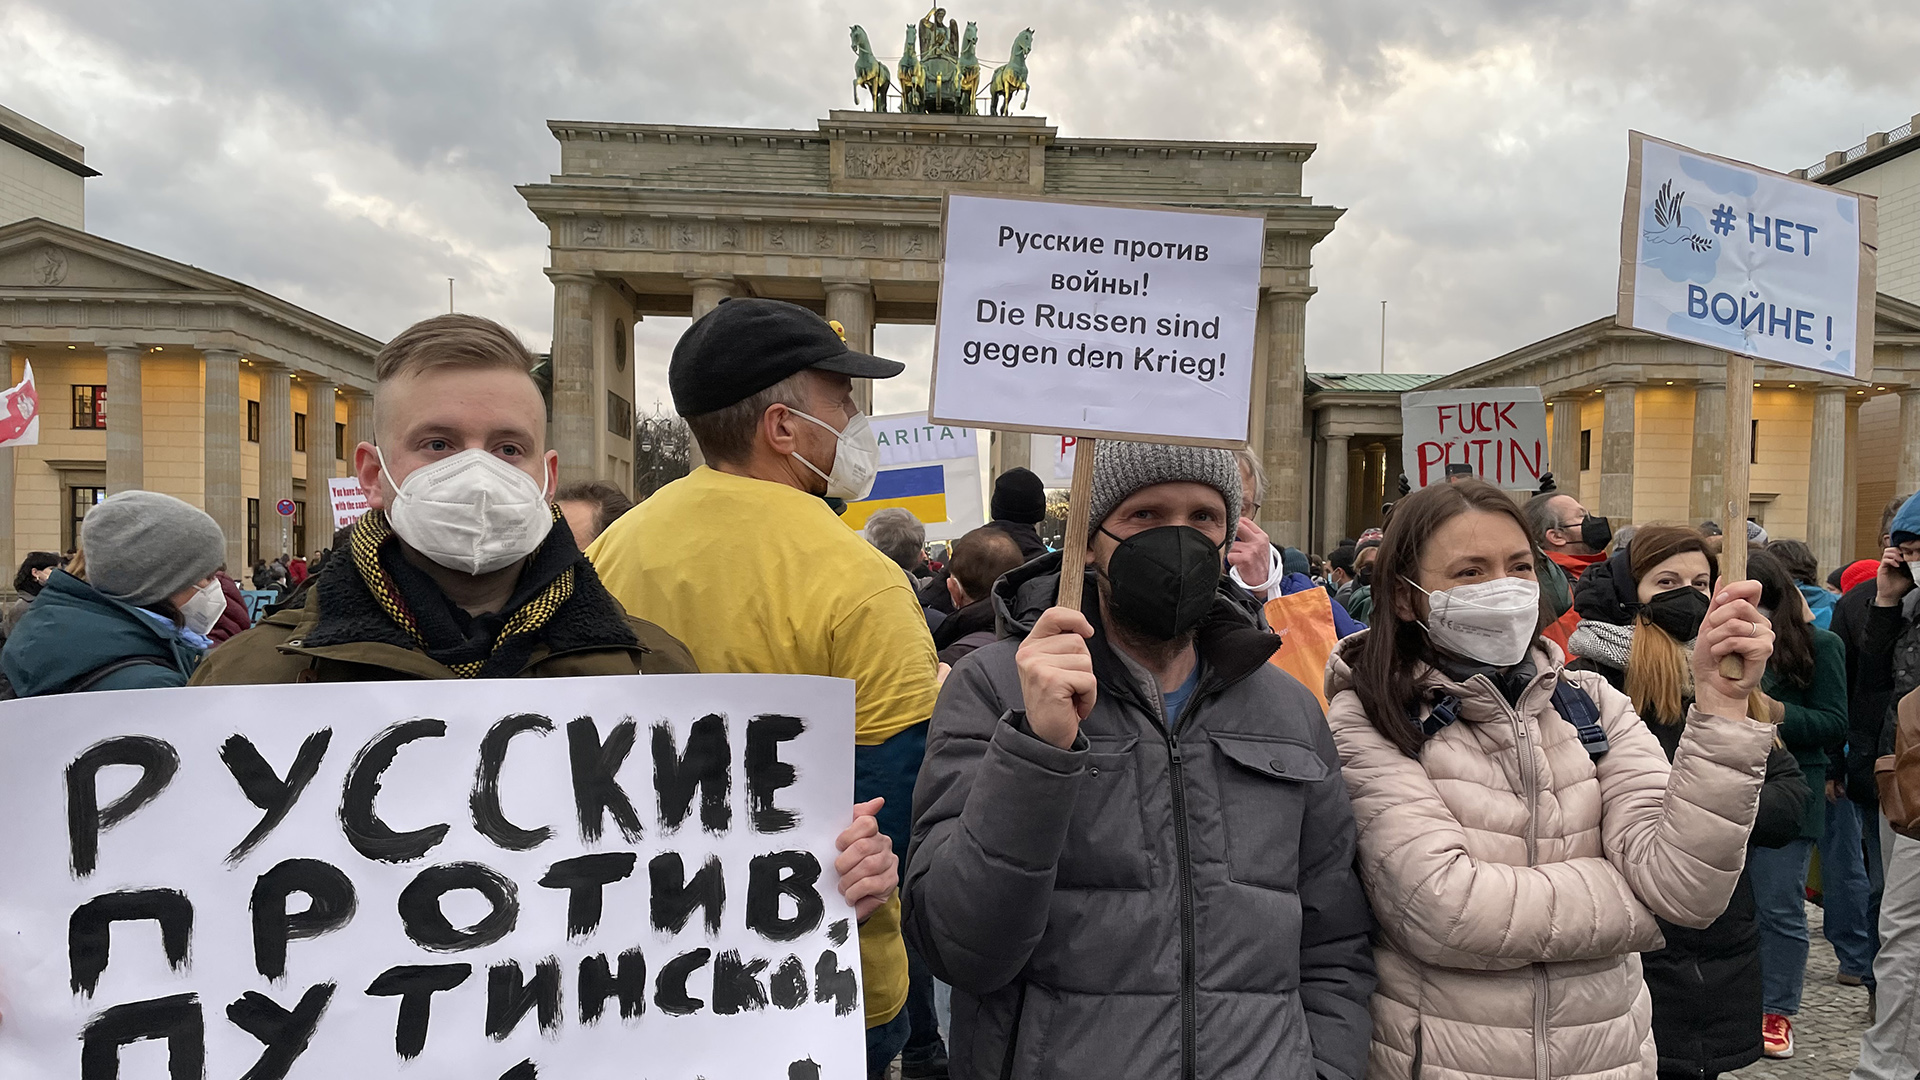 Vor dem Brandenburger Tor demonstrieren Menschen mit Schildern, auf denen "Russen gegen den Krieg" steht. | ARD-Aktuell/Silvia Stöber